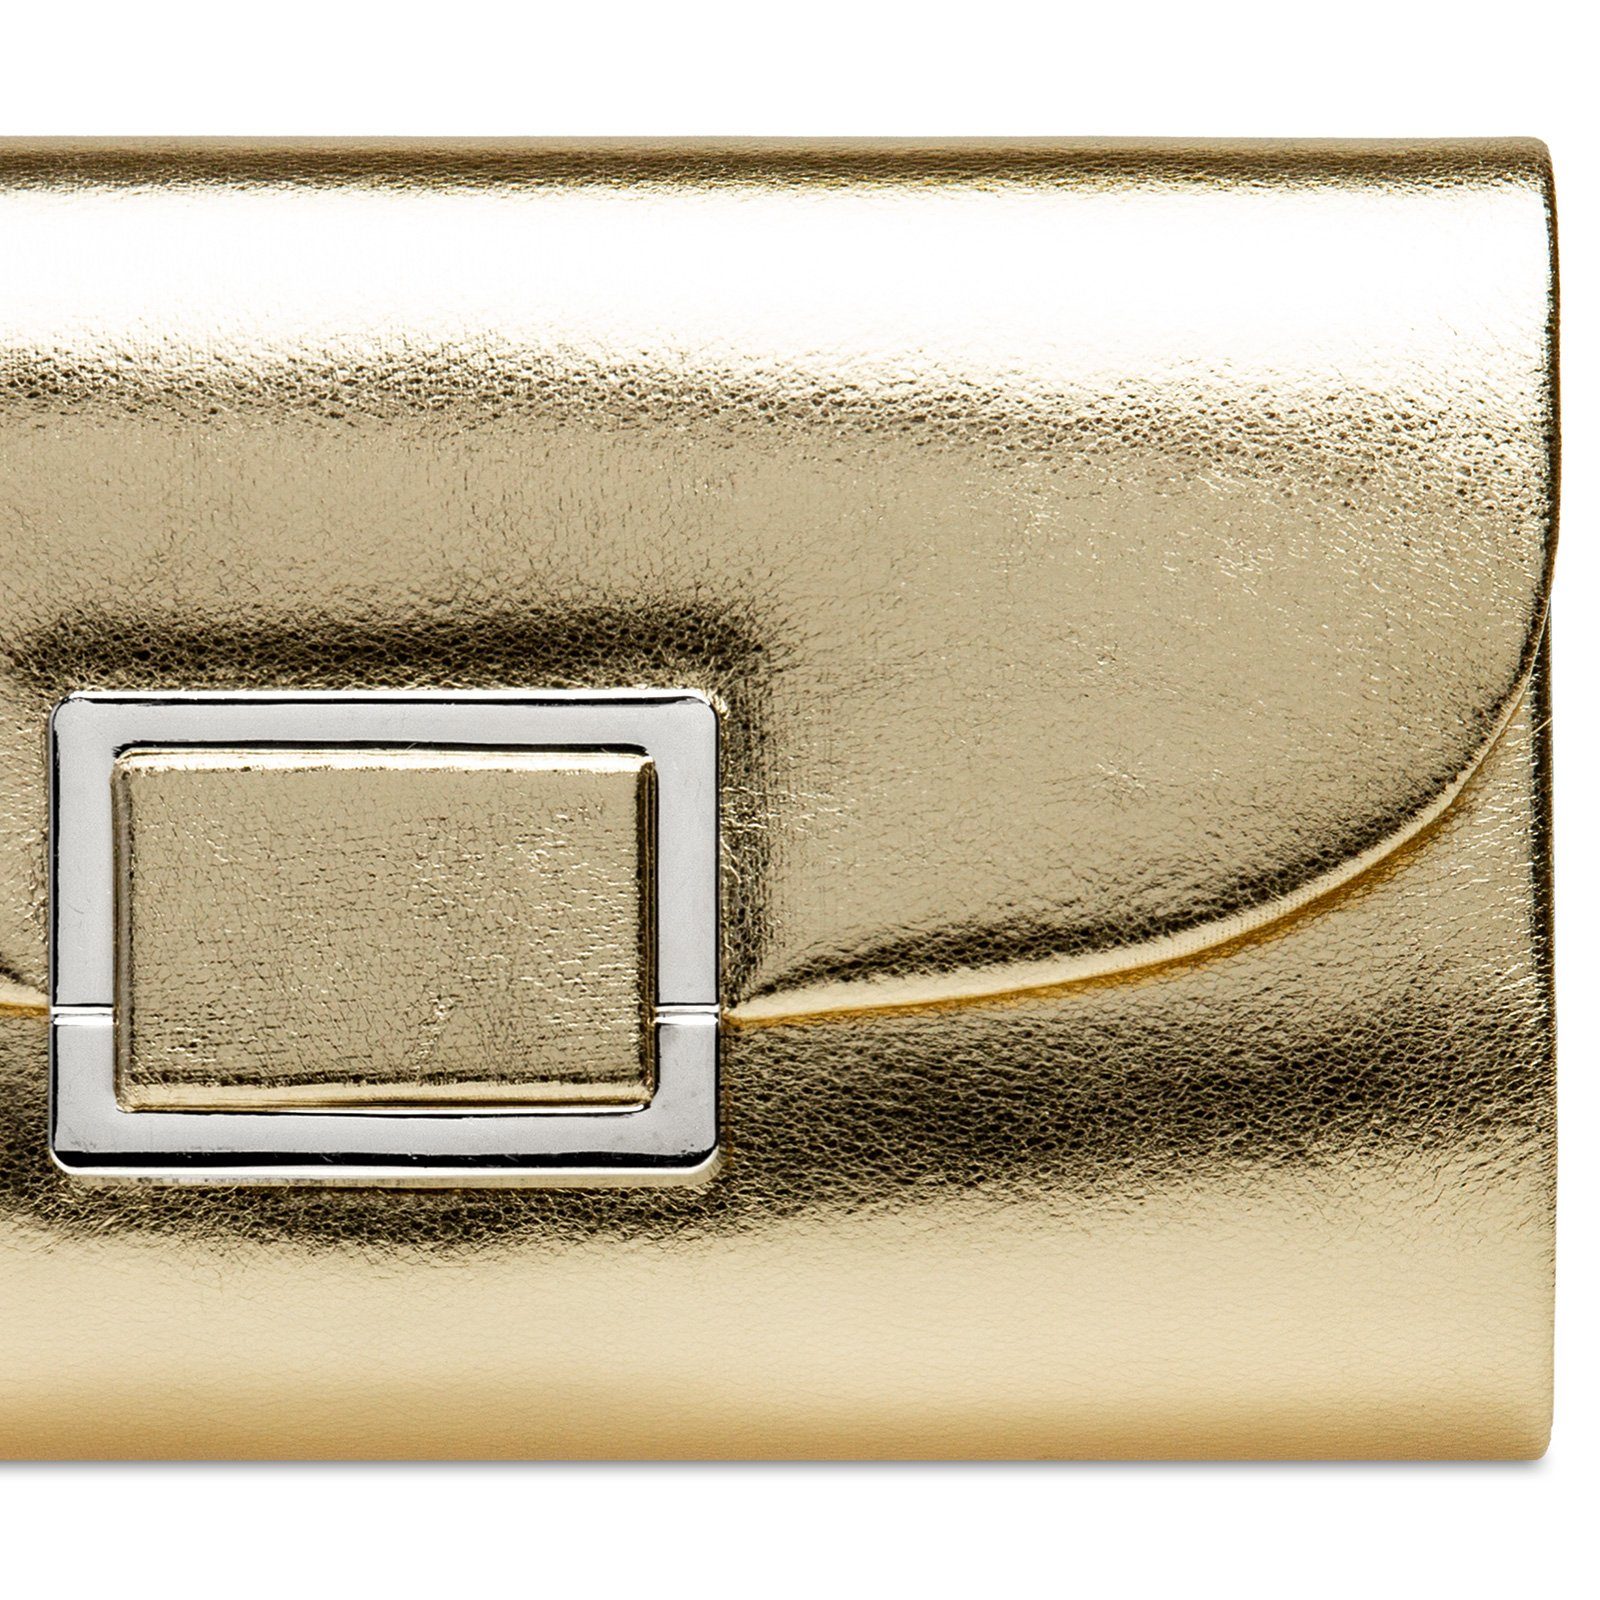 Damen Metalldekor mit Metallic Clutch Abendtasche TA512 Caspar gold